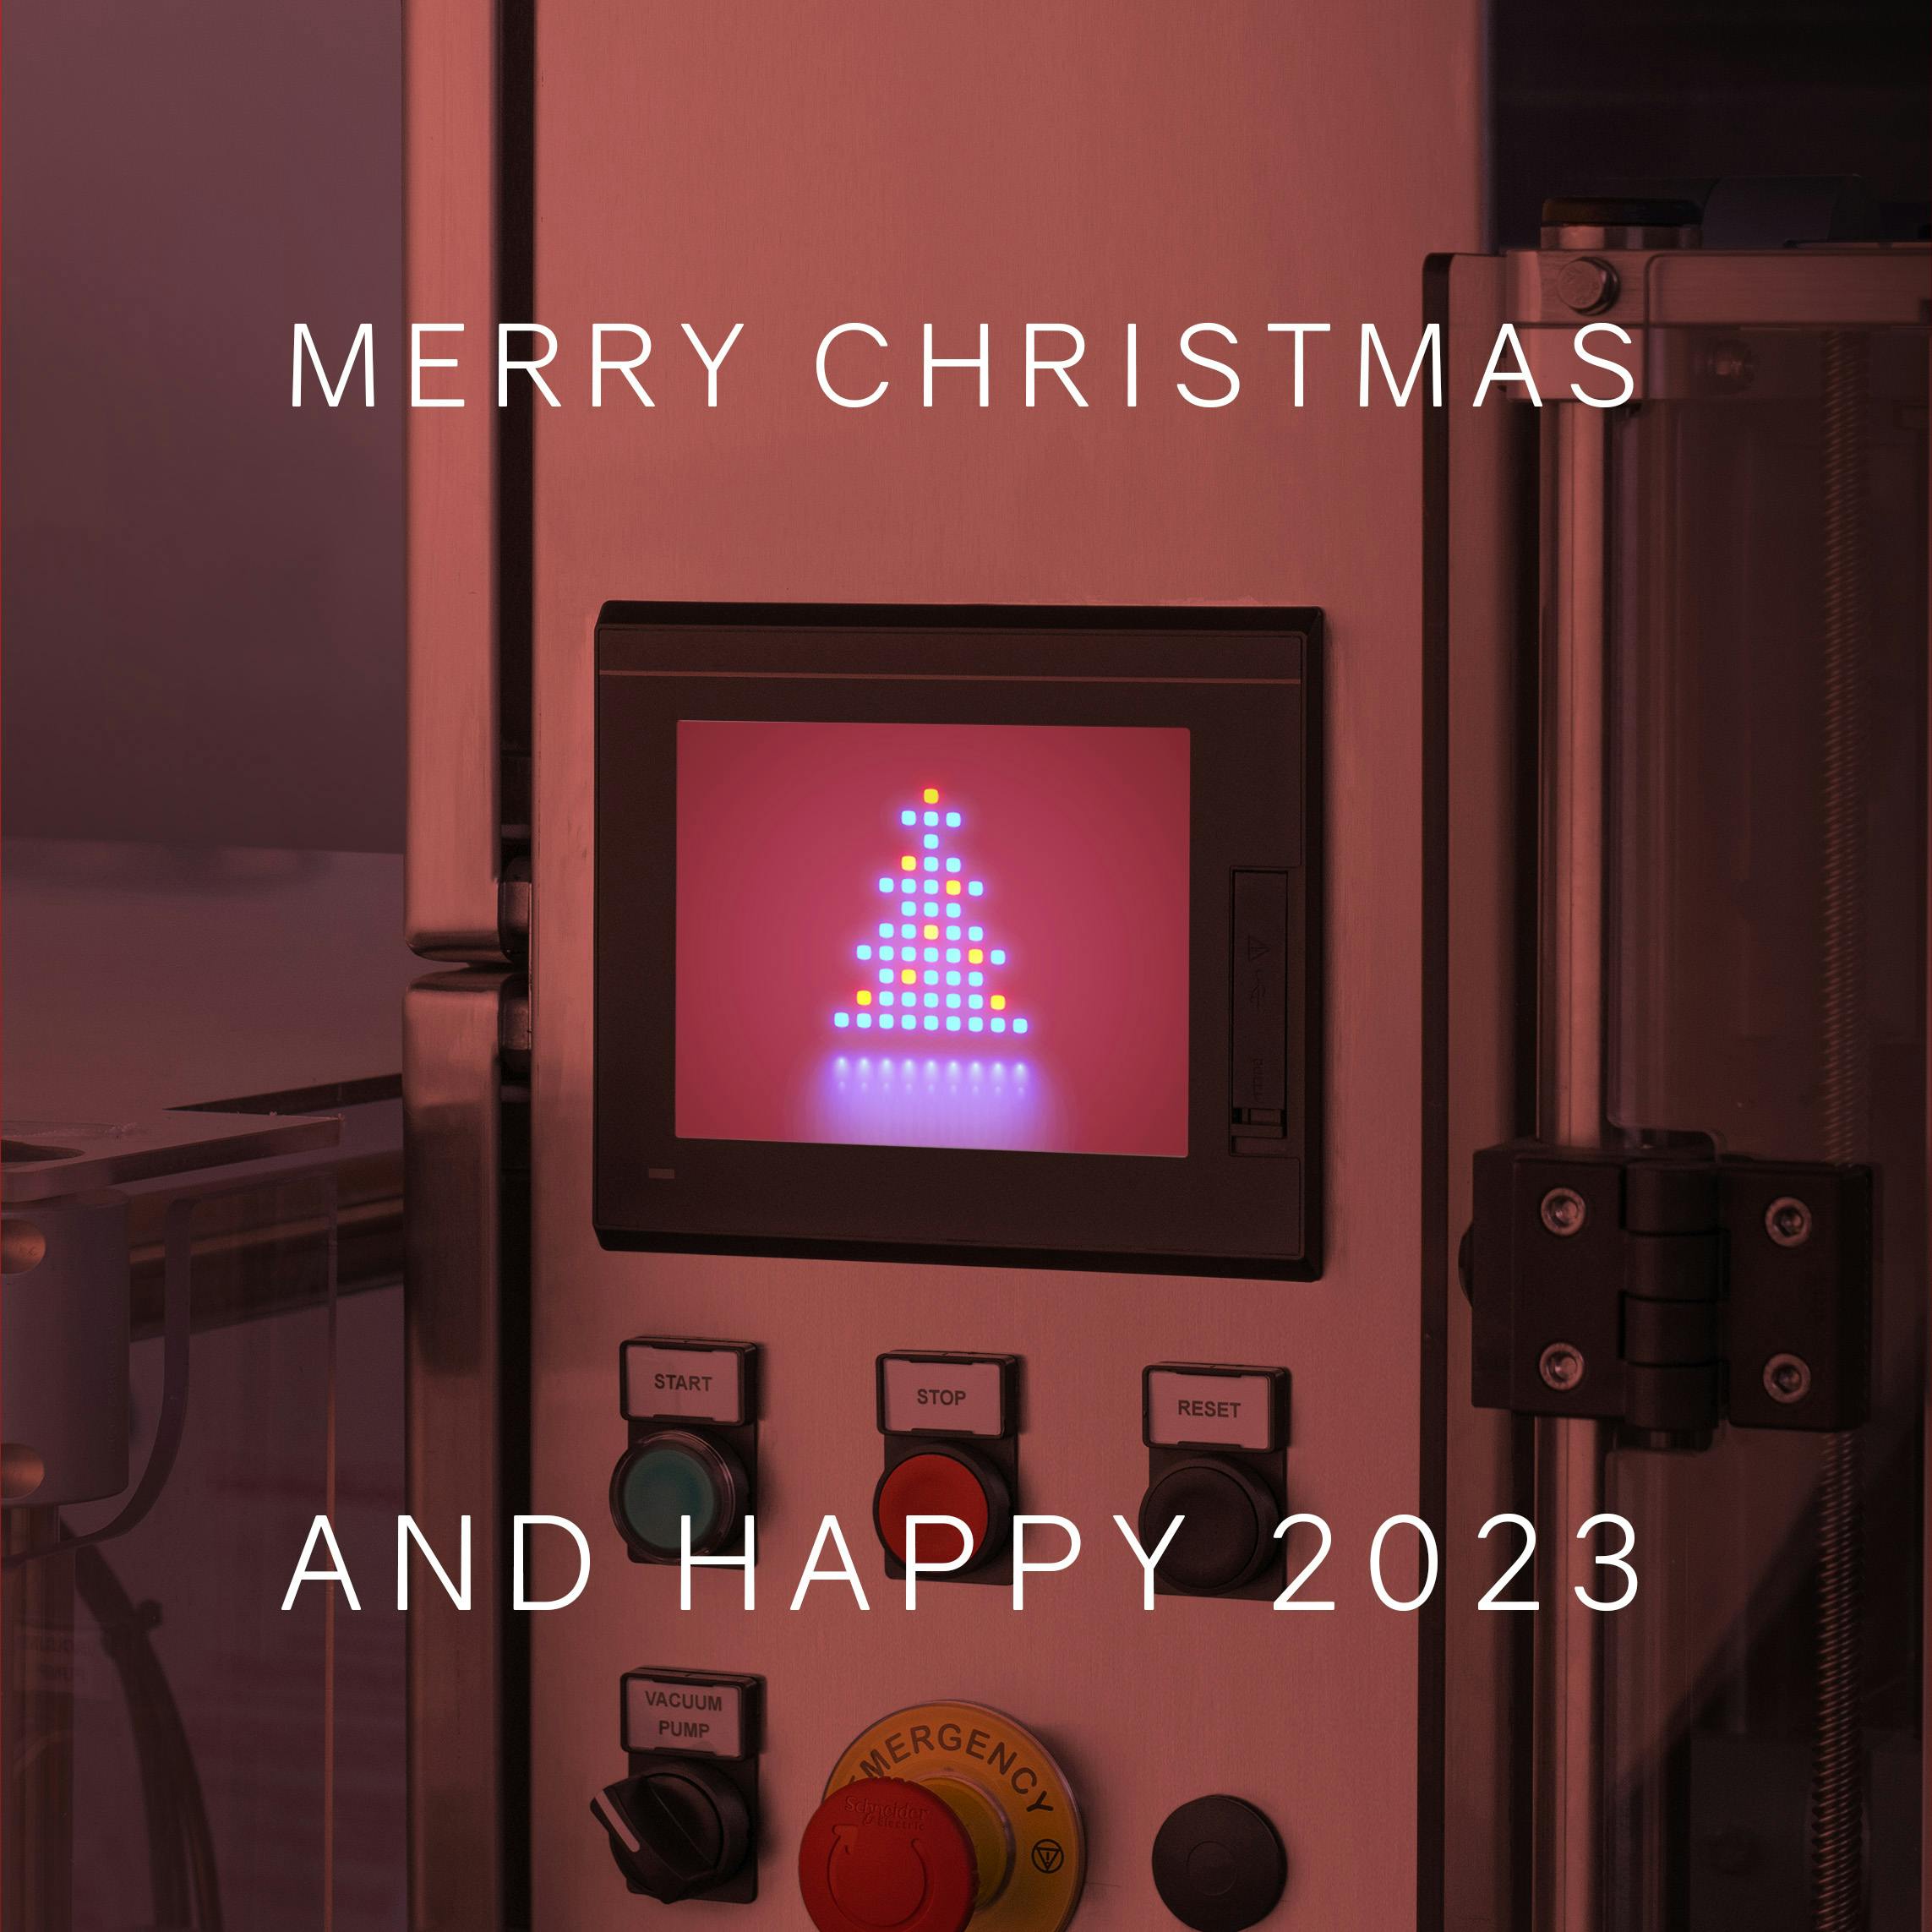 La macchina di Quinti si veste a festa per augurare Merry Crhistmas and Happy 2023, un albero luminoso campeggia sul monitor e una luce di colore rosso illumina tutto a festa.